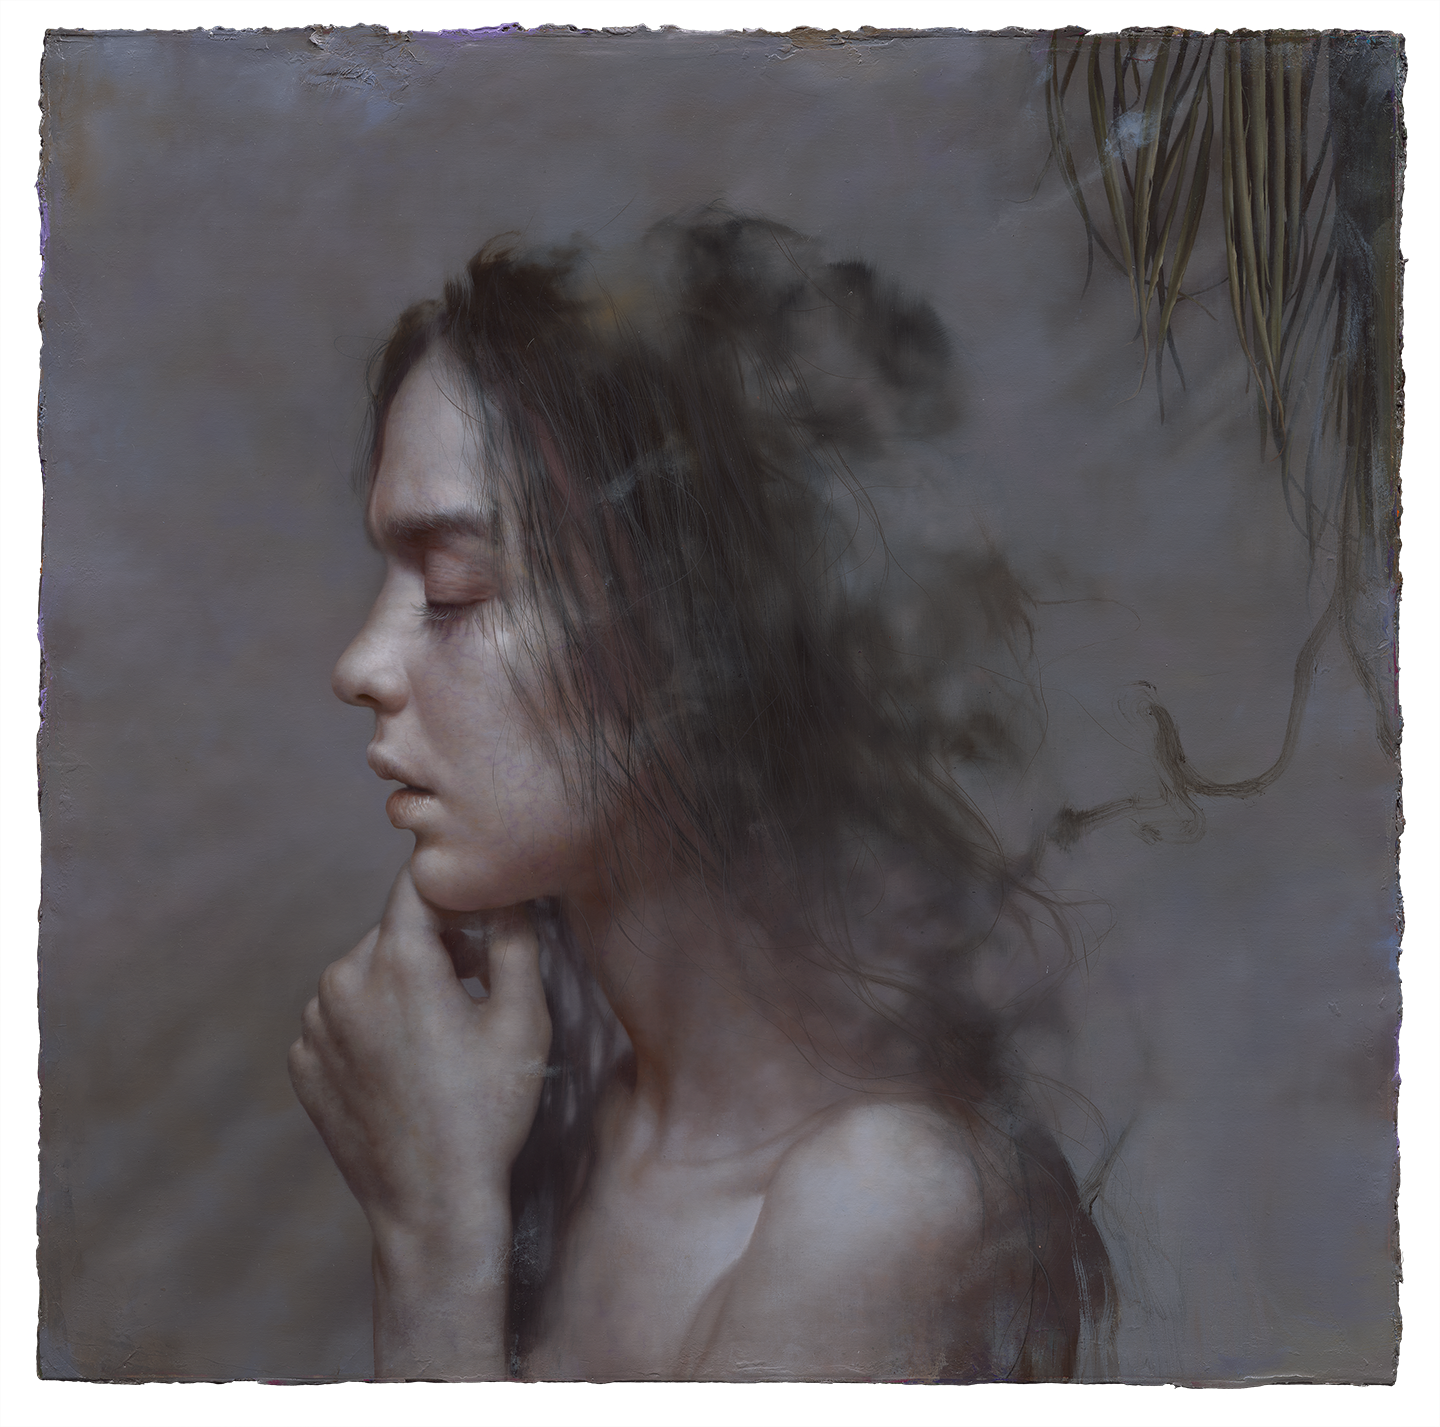 曙畫廊 Elighten Gallery -樹下的祈禱者The prayer under the tree-油彩畫布-Oil on the canvas-92X92cm-2021